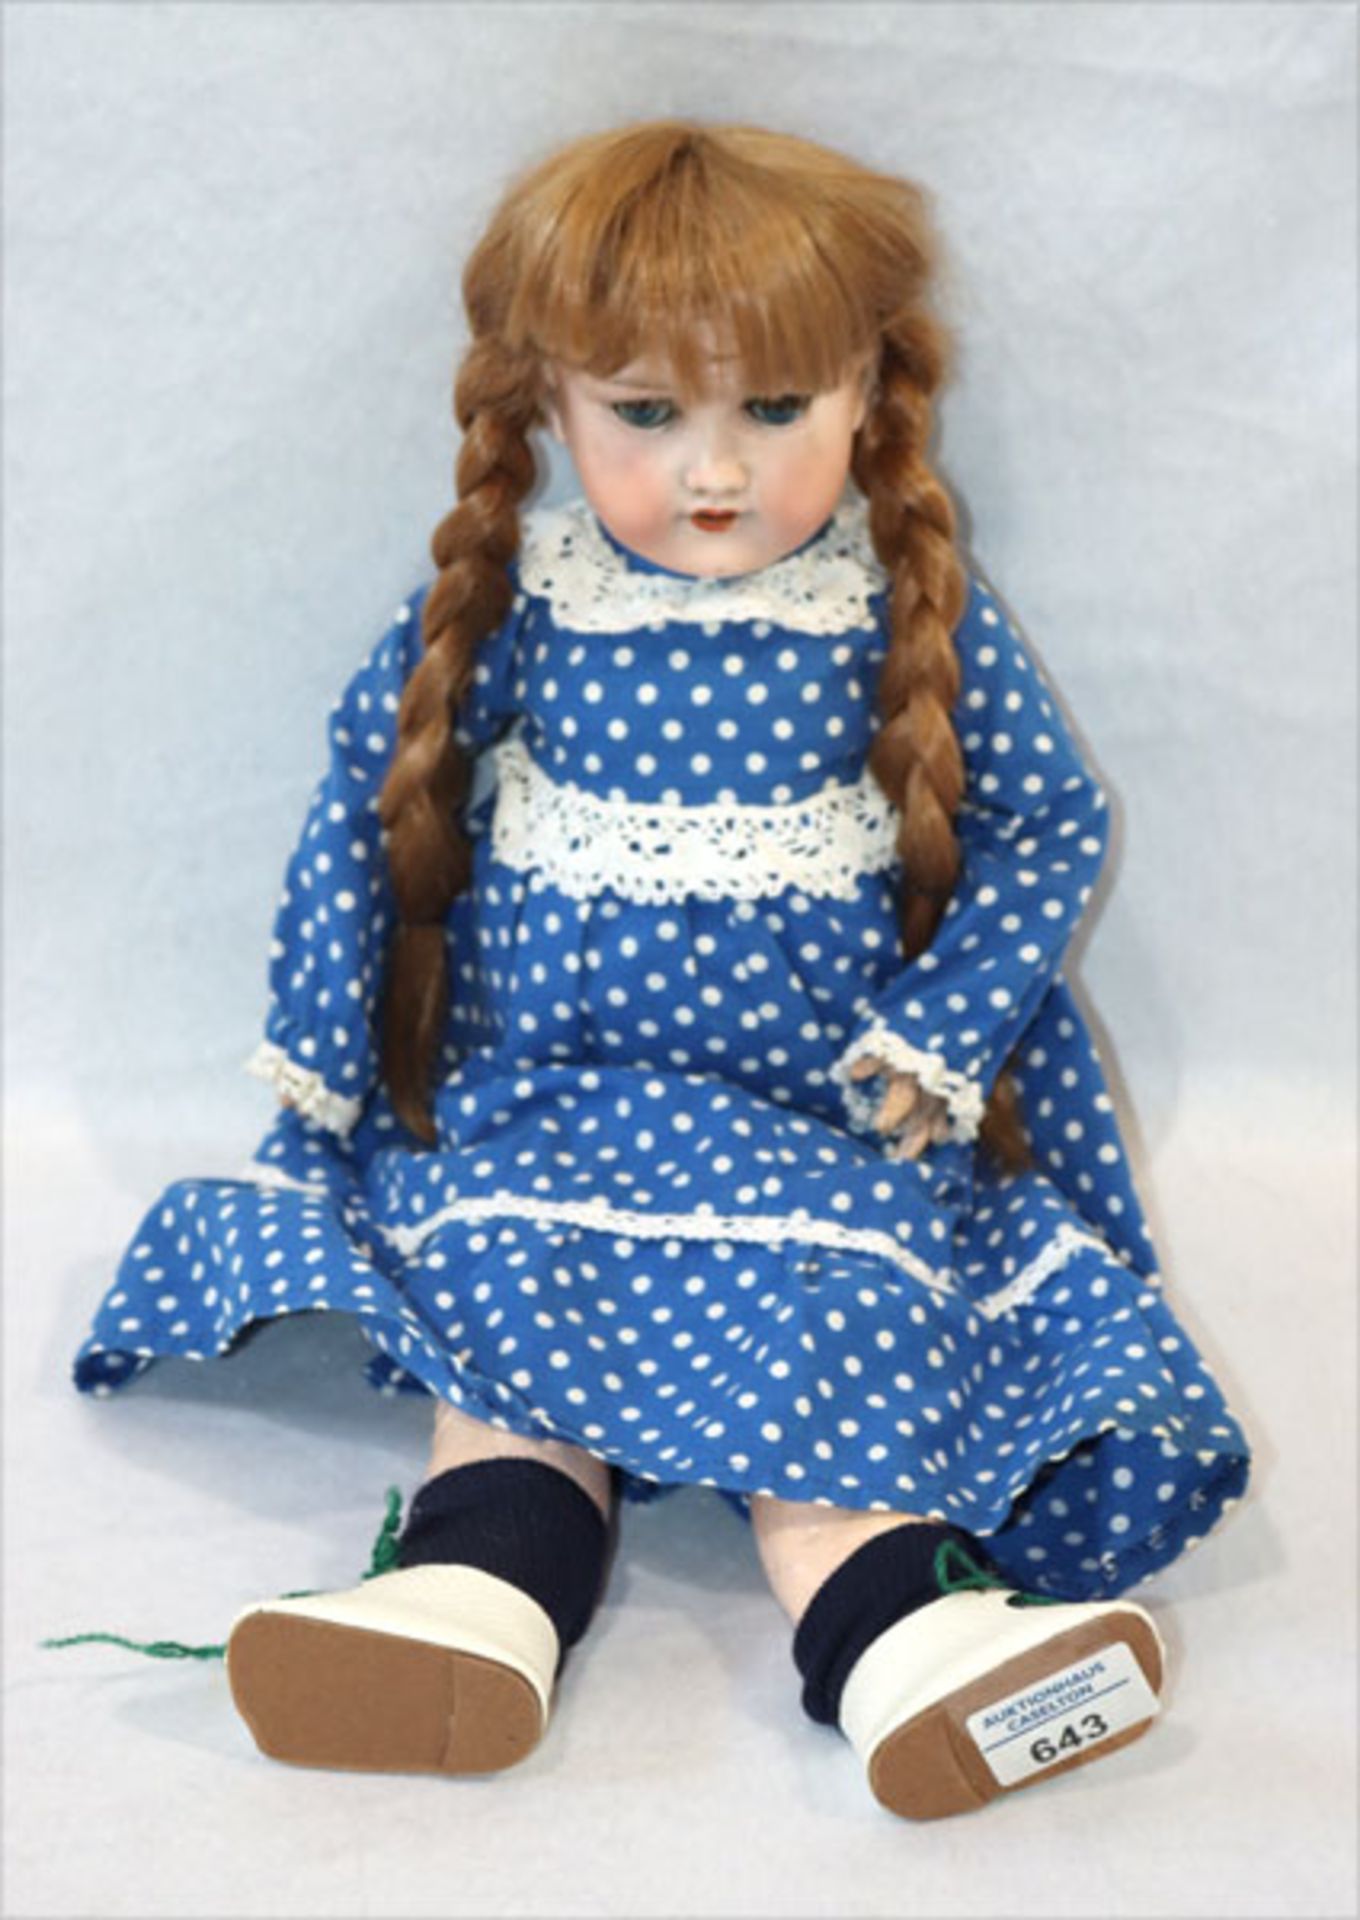 Puppe, gemarkt DRGM 390n, A 3 M, Armand Marseille, Kurbelkopf mit Schlafaugen und offenem Mund,